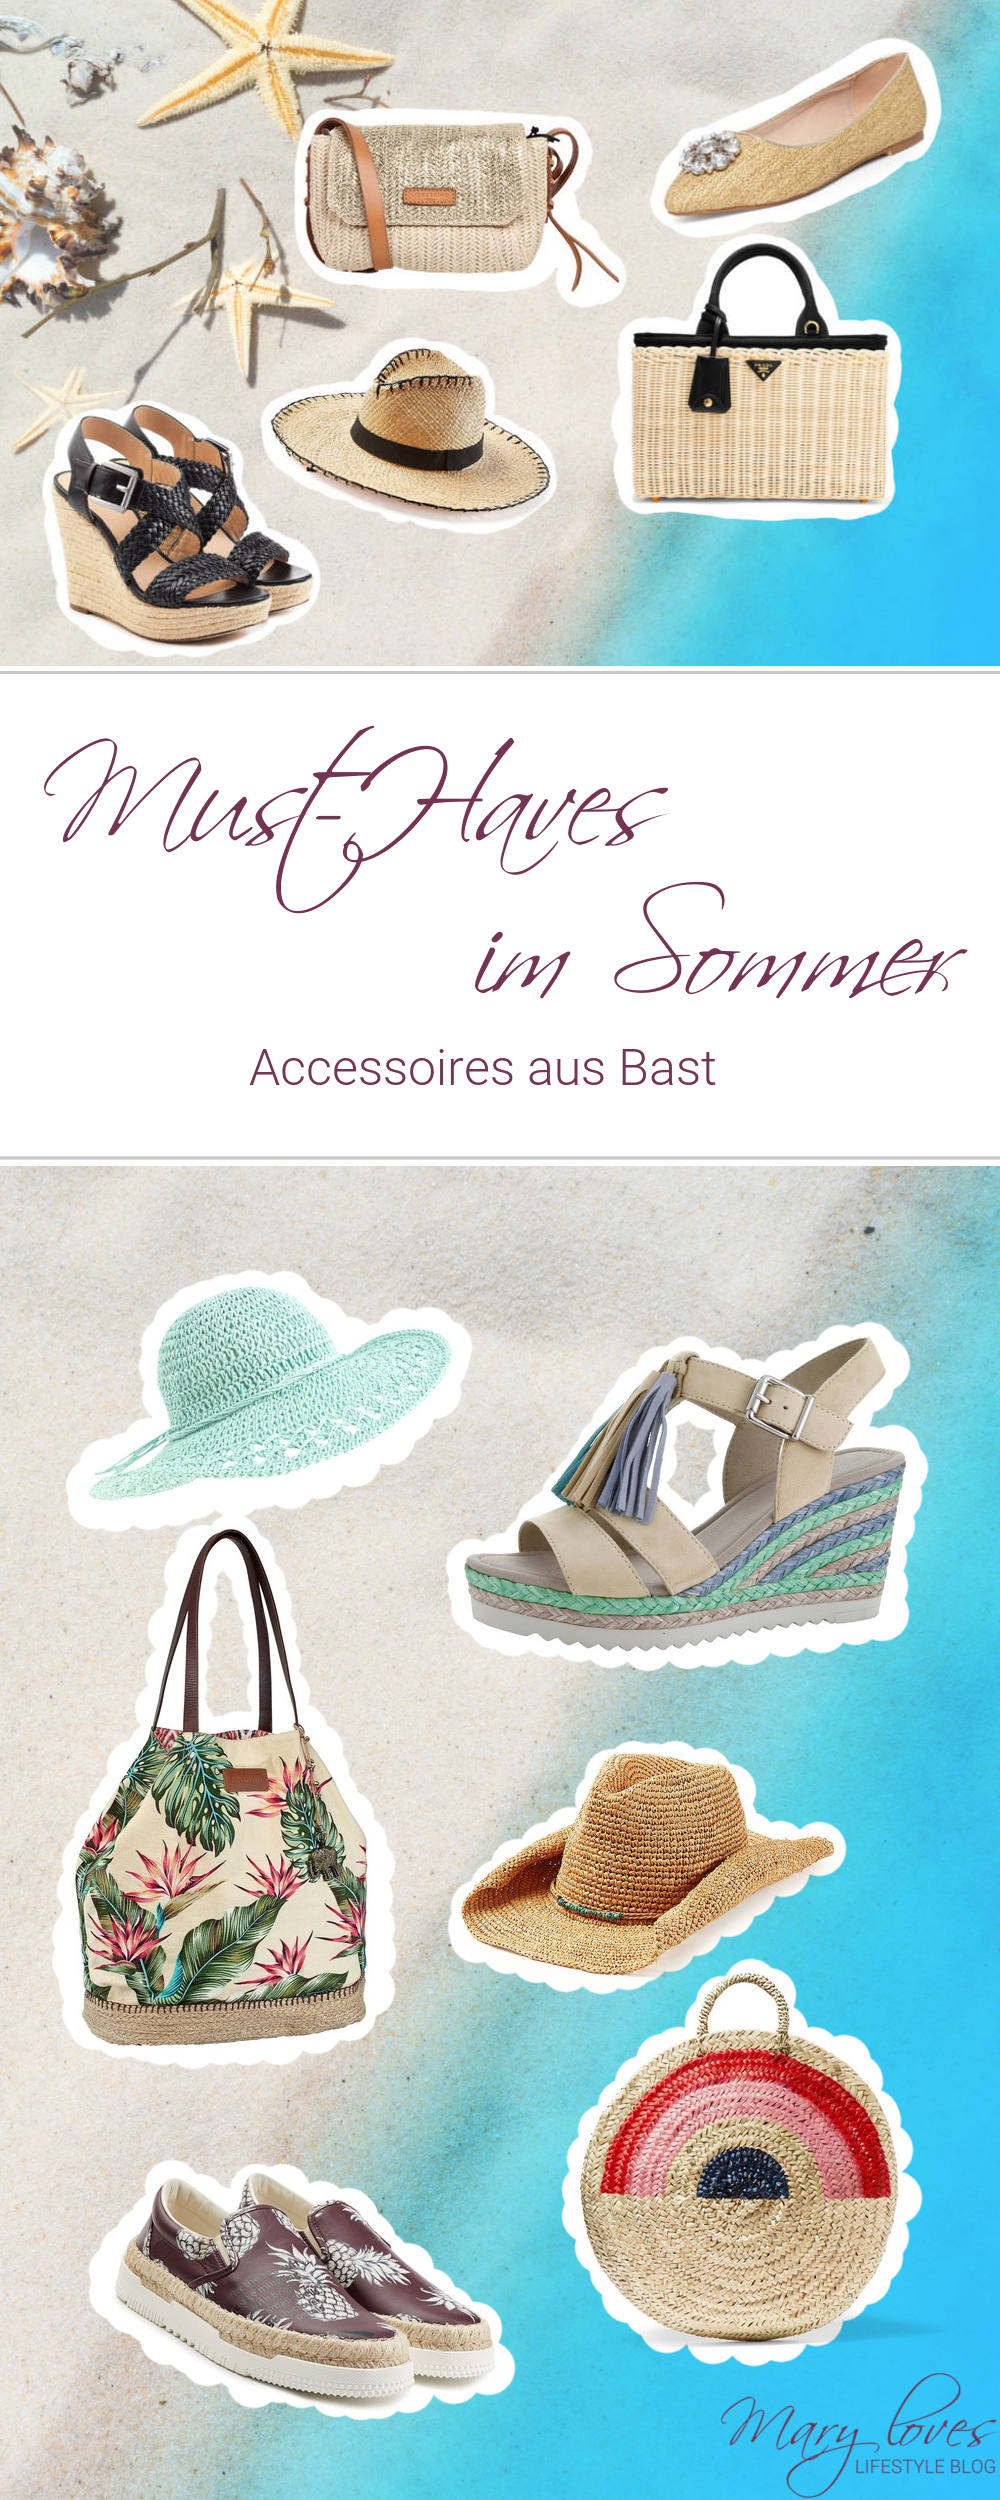 Must-Have des Sommers - Mit Accessoires aus Bast kommt Summerfeeling auf - Das ist der Sommertrend 2017 - Espadrilles, Basthüte und Korbtaschen